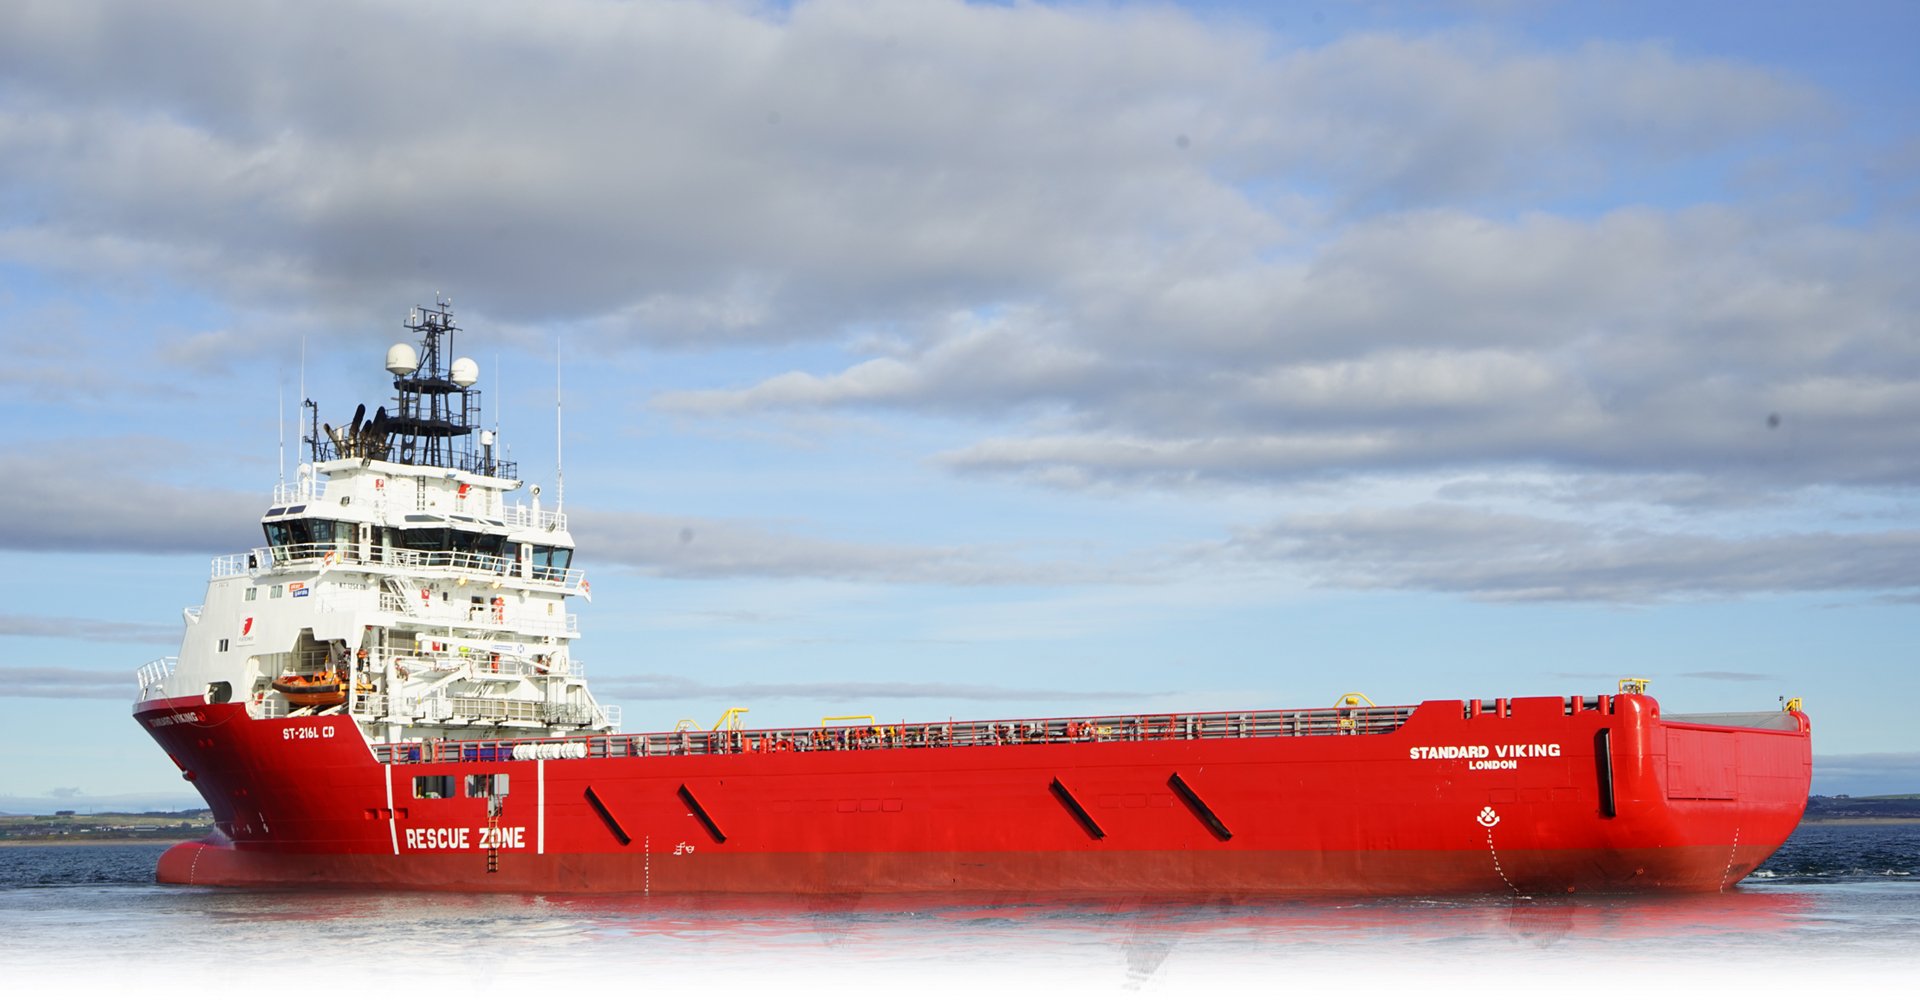 Standard Viking vessel - Standard Drilling